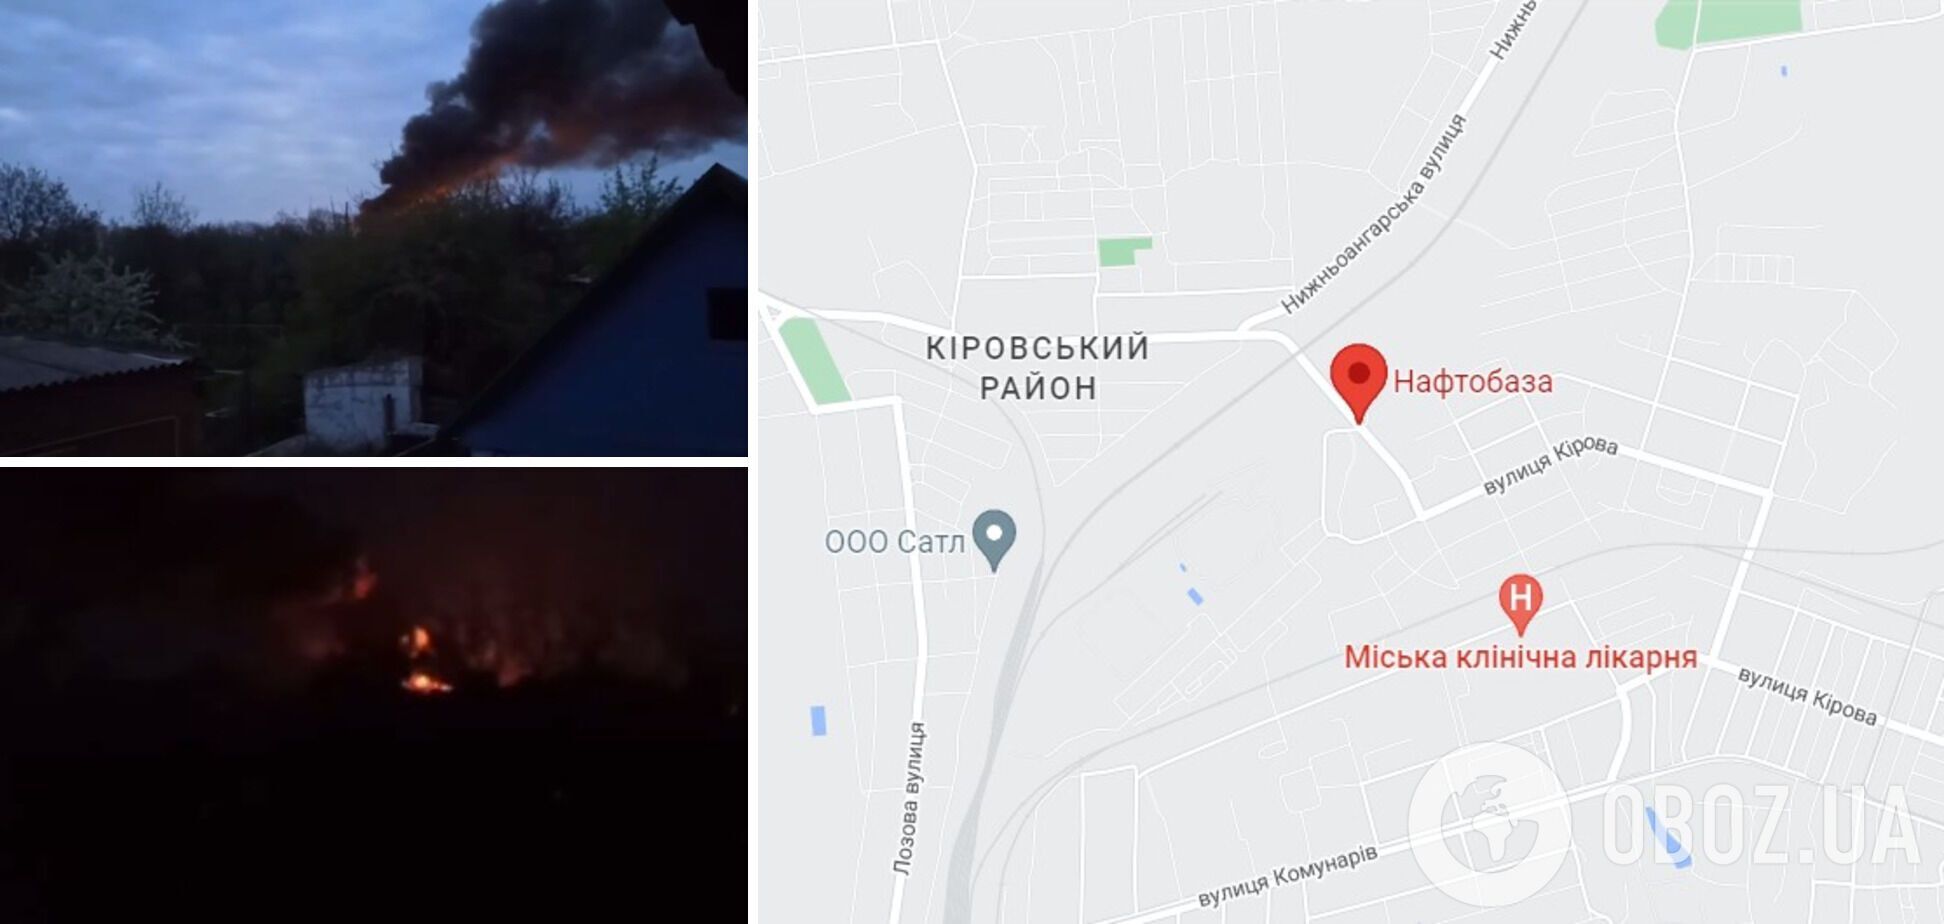 Пожар вспыхнул на нефтебазе в Кировском районе Донецка